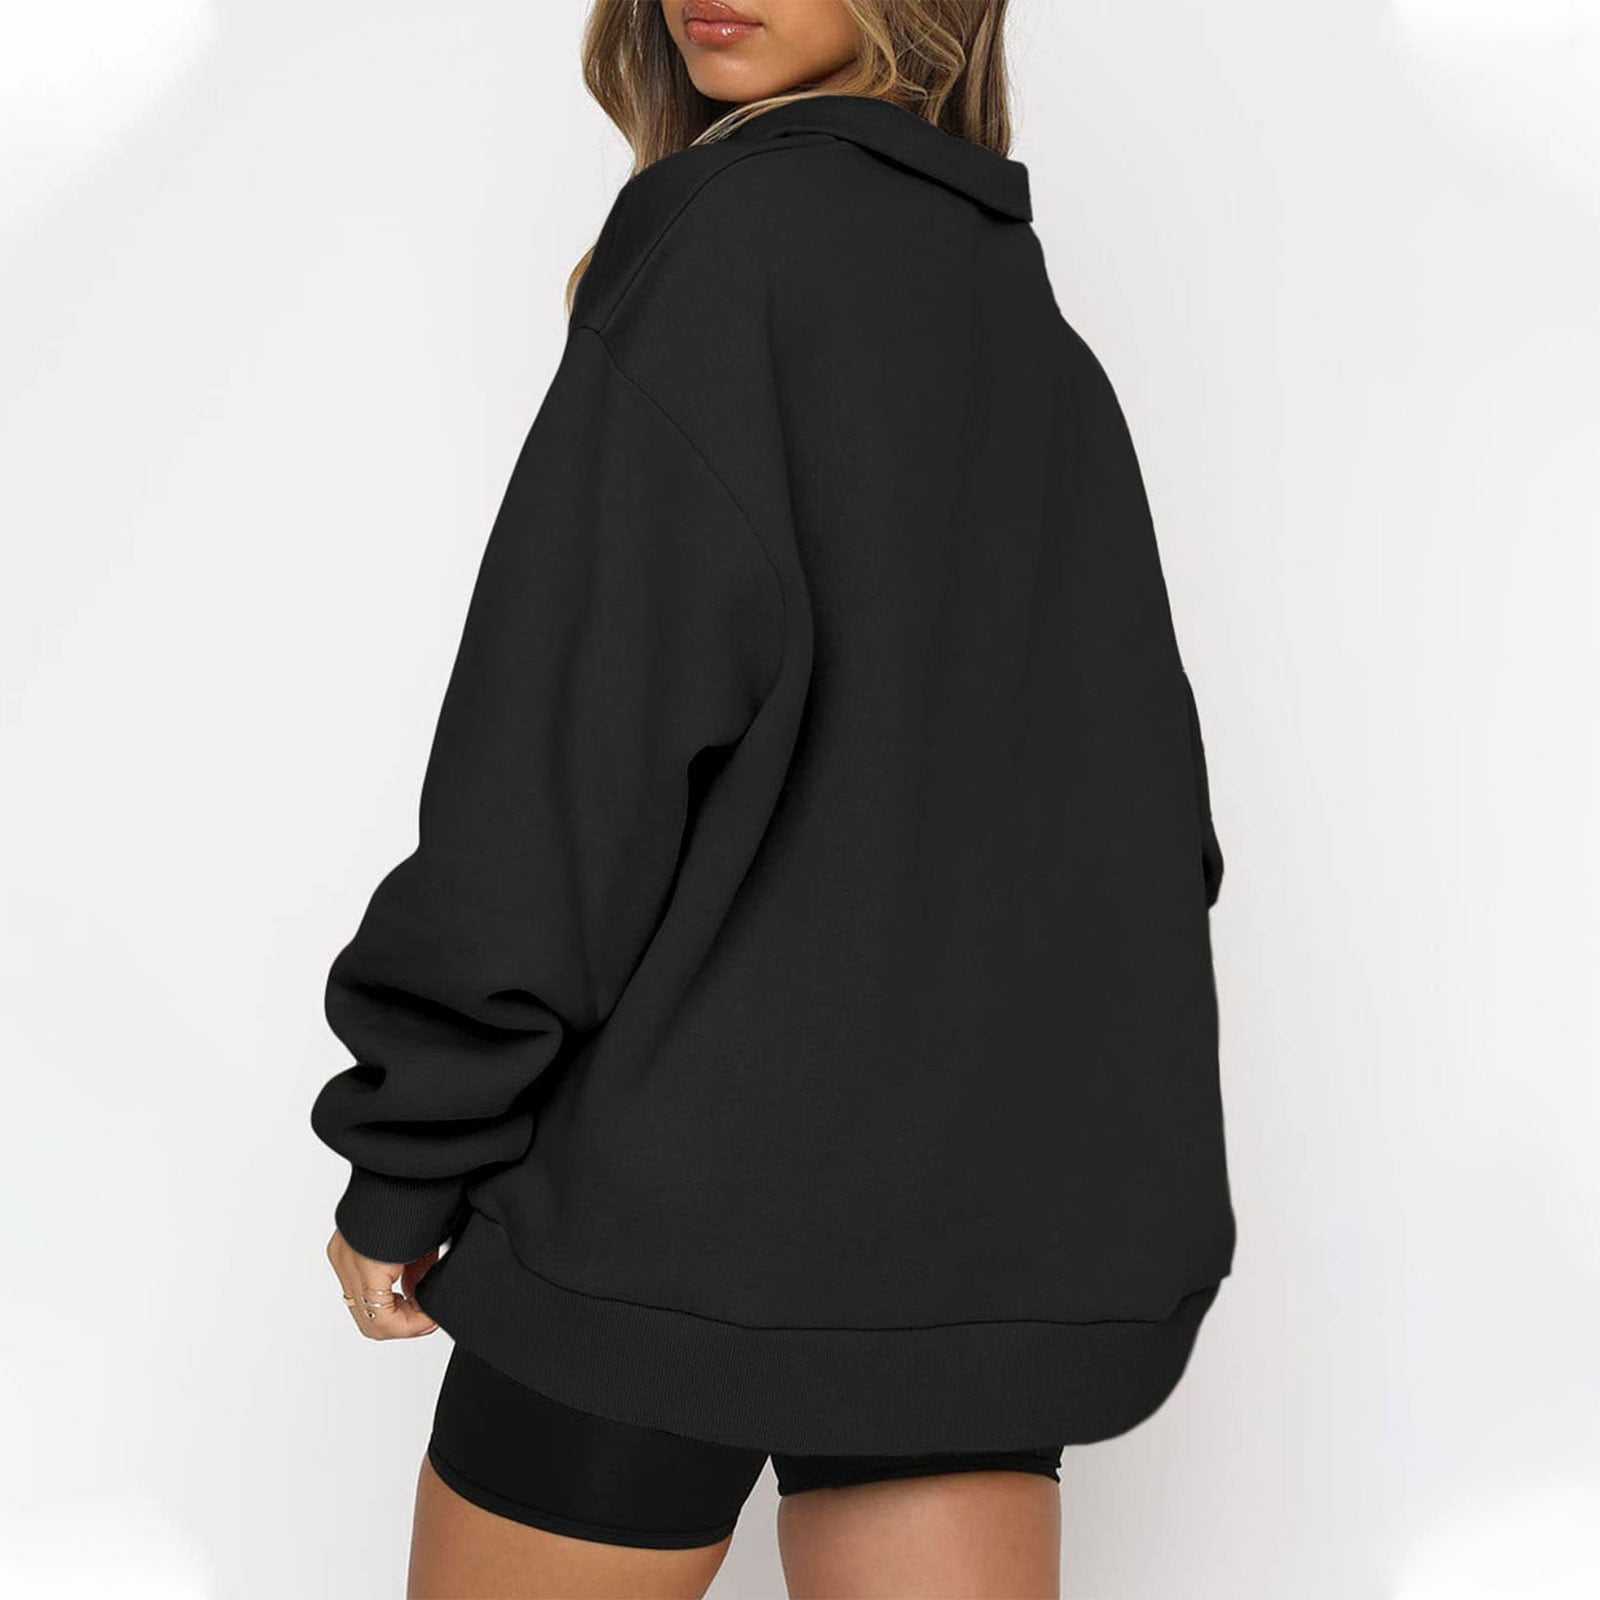 MISSACTIVER Women’s Oversized Half Zip Sweatshirt Quarter 1/4 Zipper Long Sleeve Drop Shoulder Pocket Pullover Jacket Tops